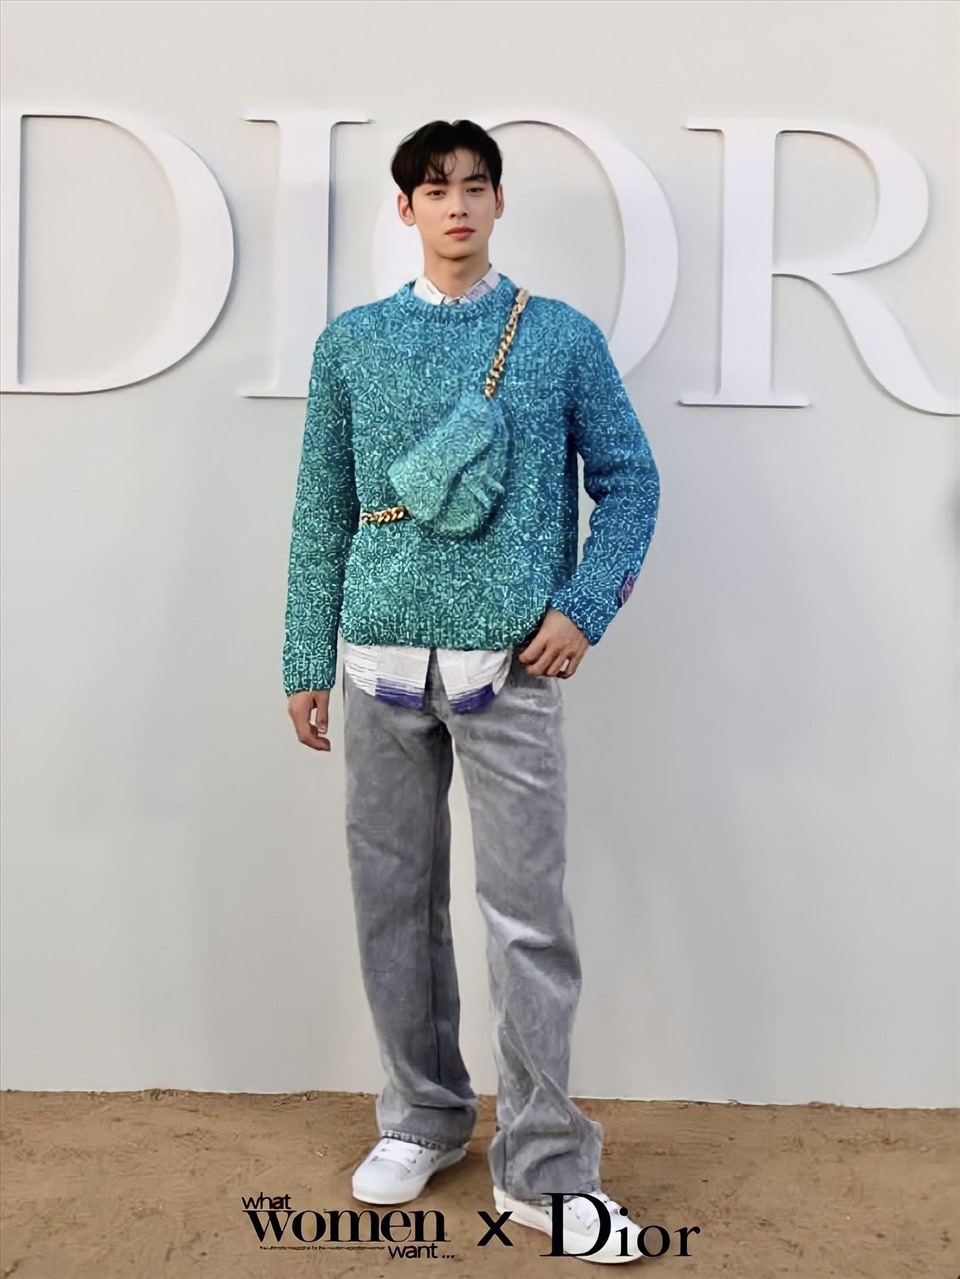 ha Eun Woo mặc bộ trang phục trẻ trung, nằm trong bộ sưu tập mới nhất của Dior. Ảnh: Twitter Dior.